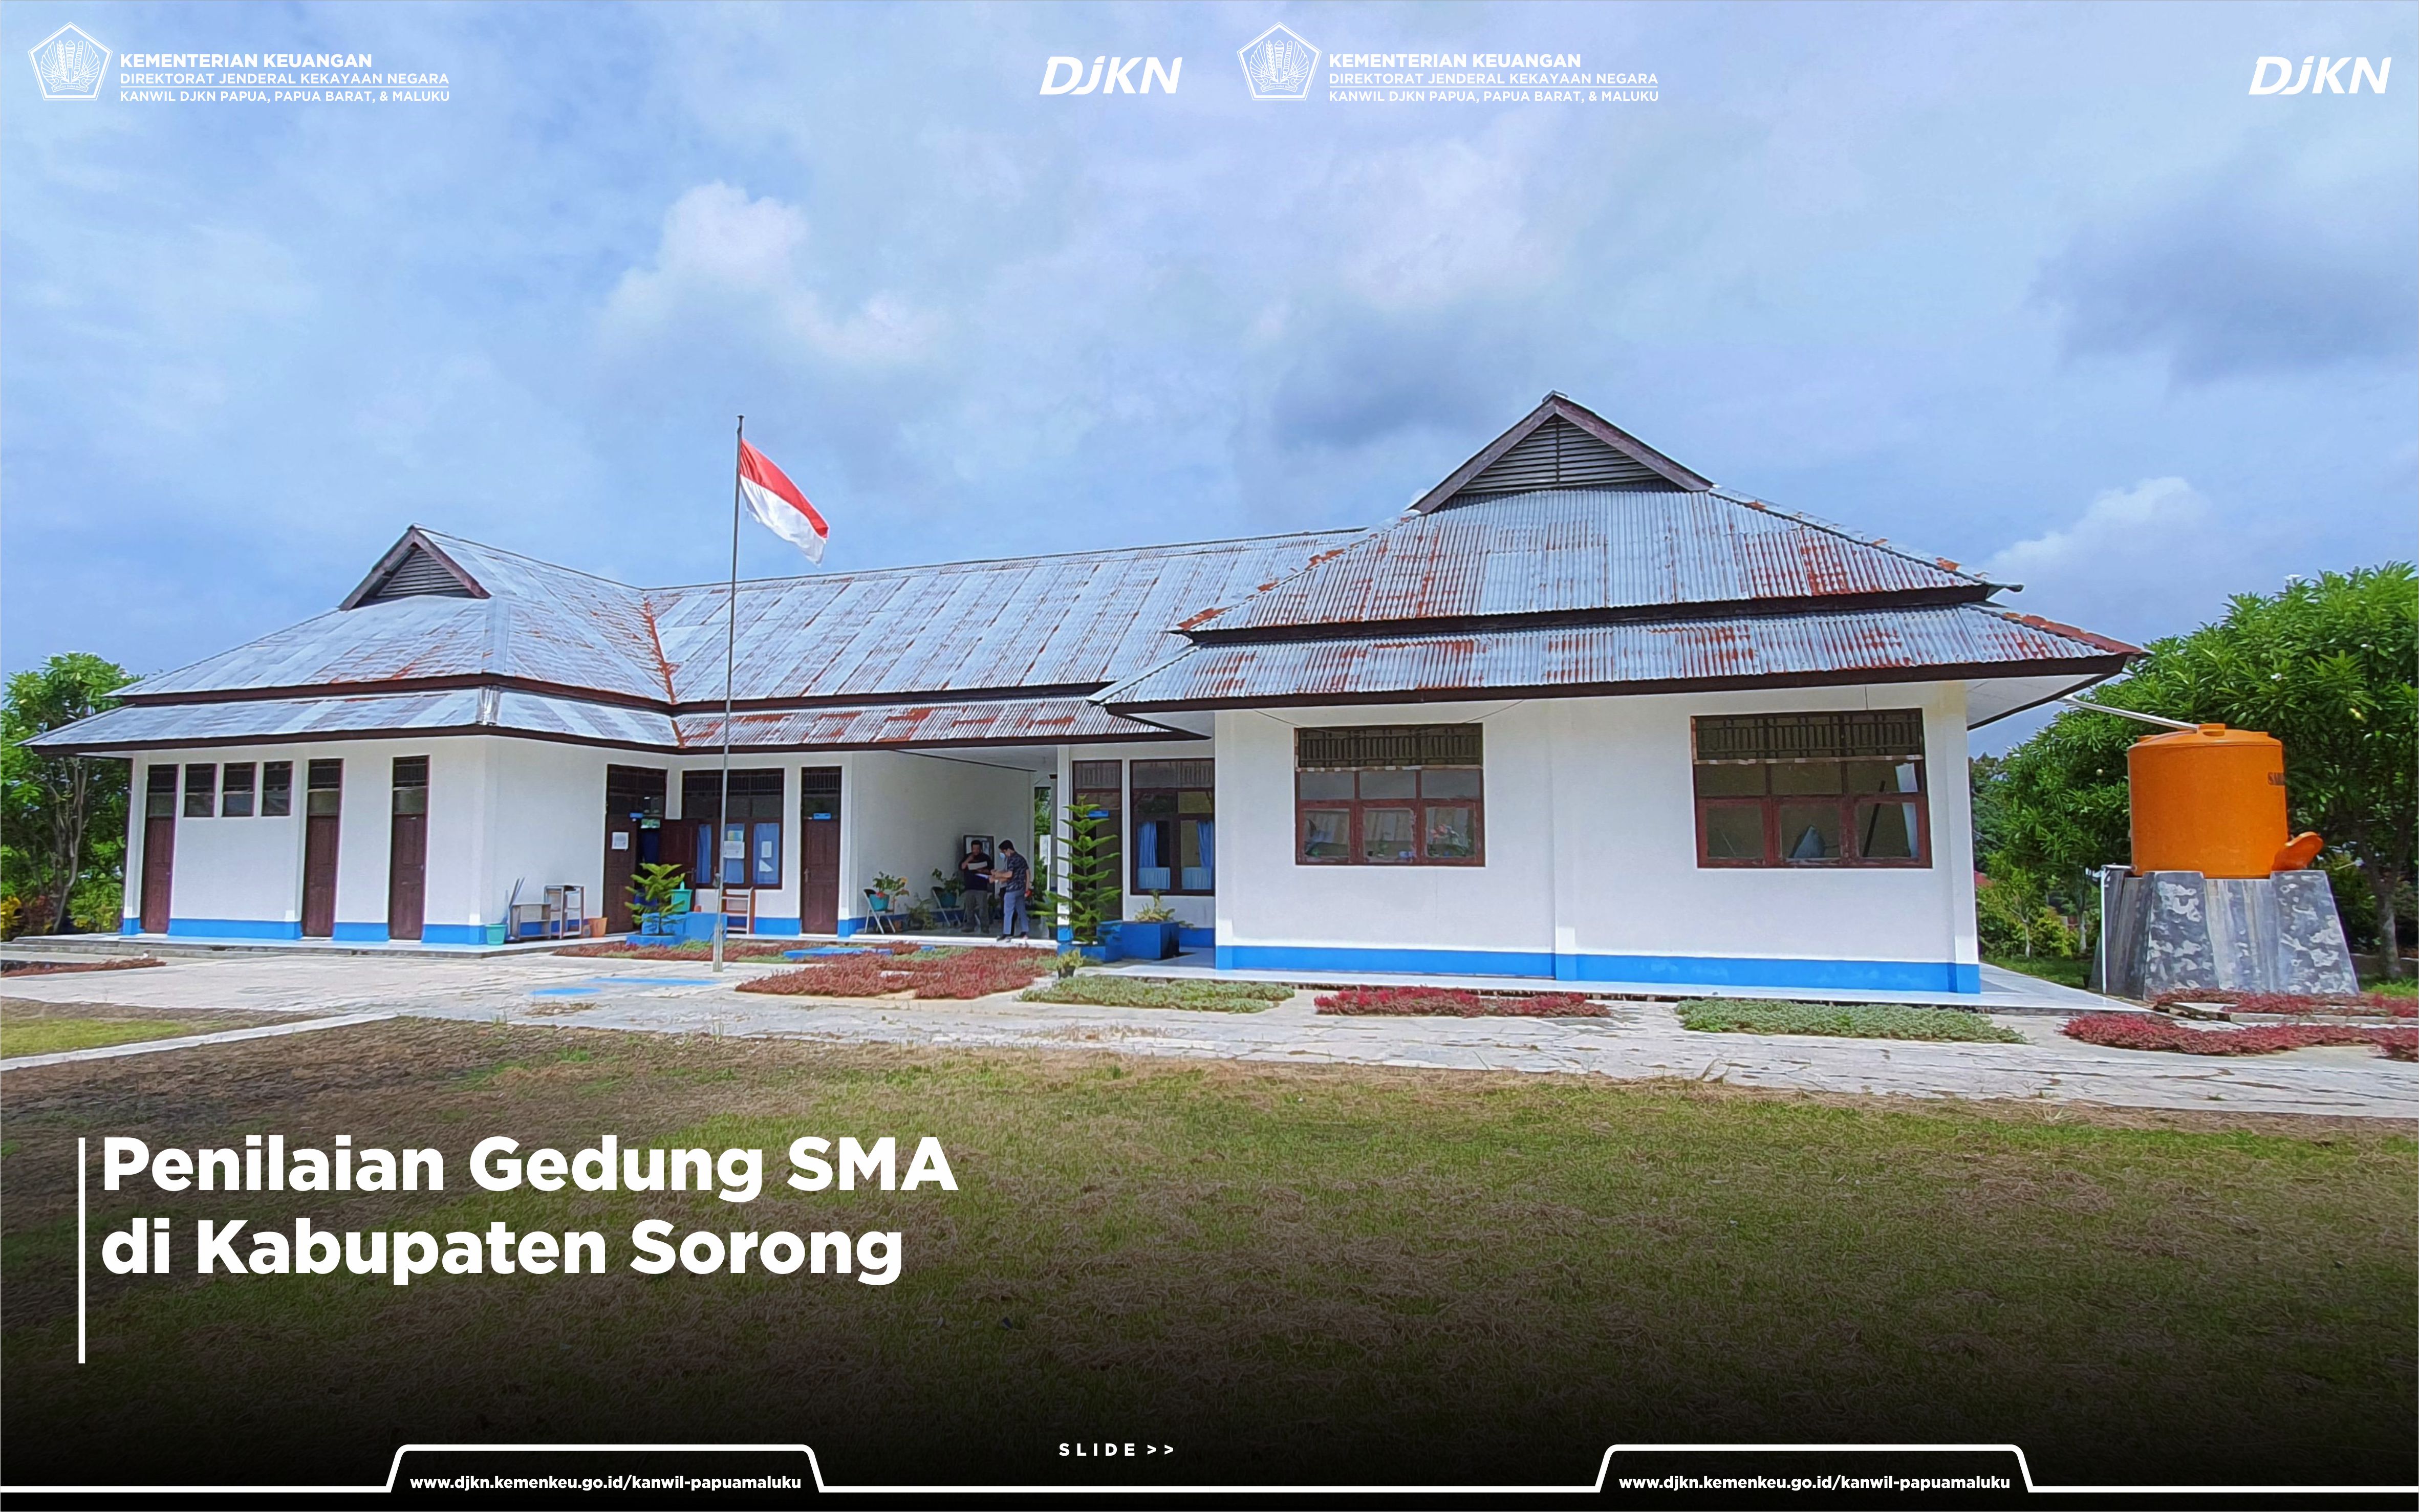 Penilaian Gedung Sekolah Menengah Atas di Kabupaten Sorong